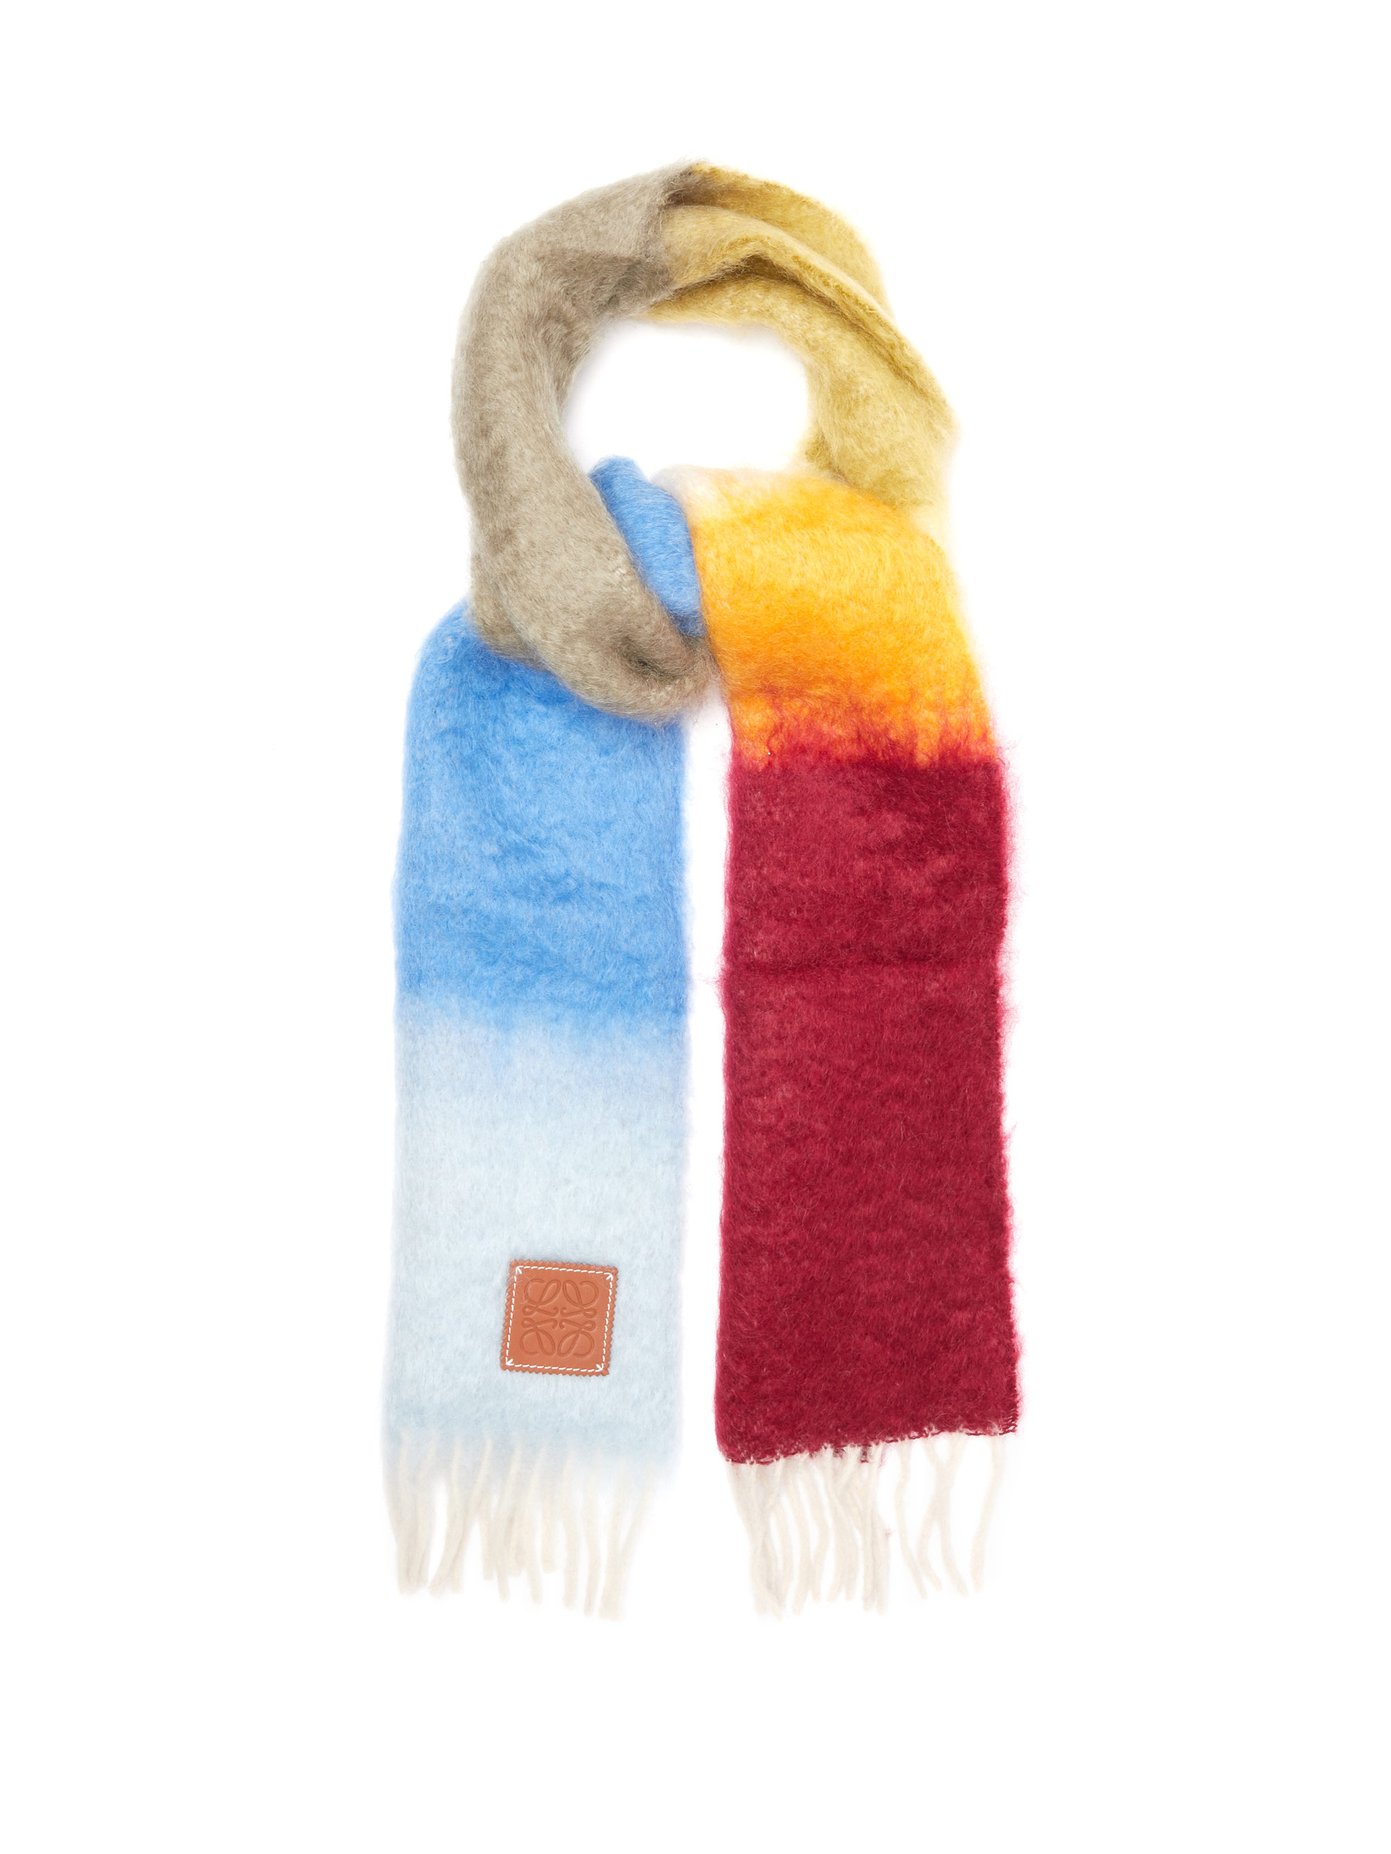 loewe wool scarf